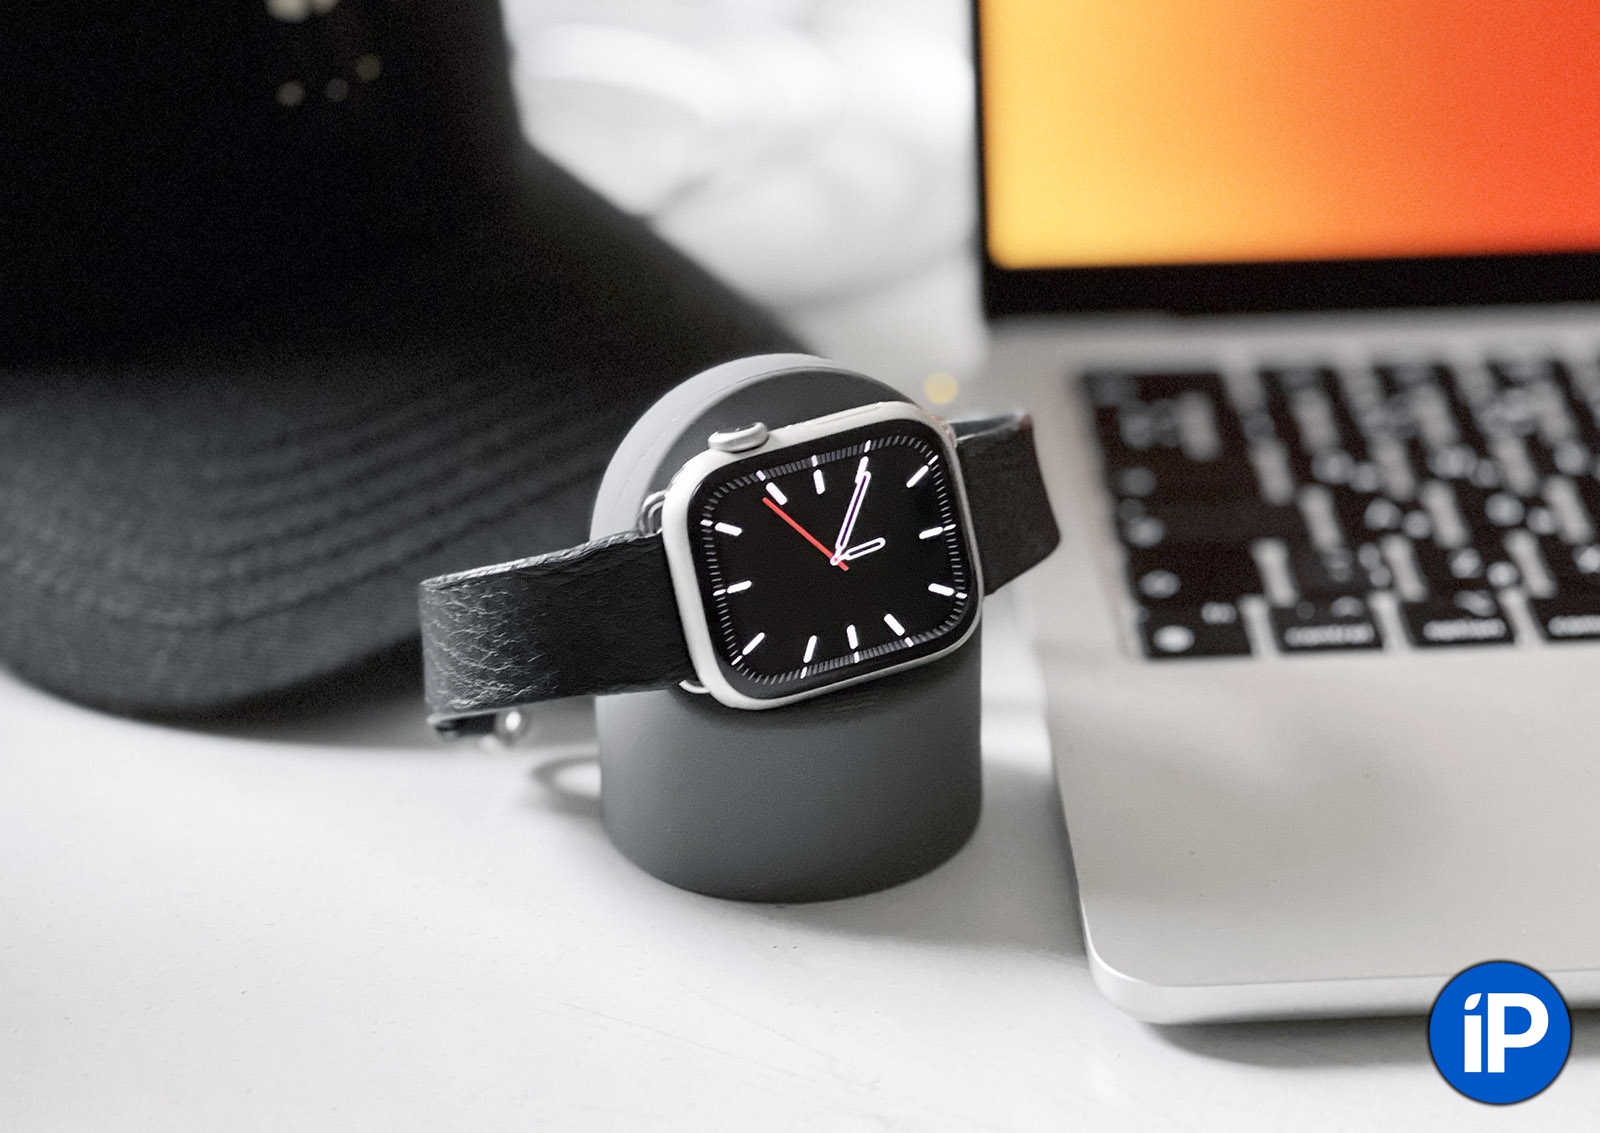 Лучший держатель для зарядки Apple Watch всего за 300 рублей